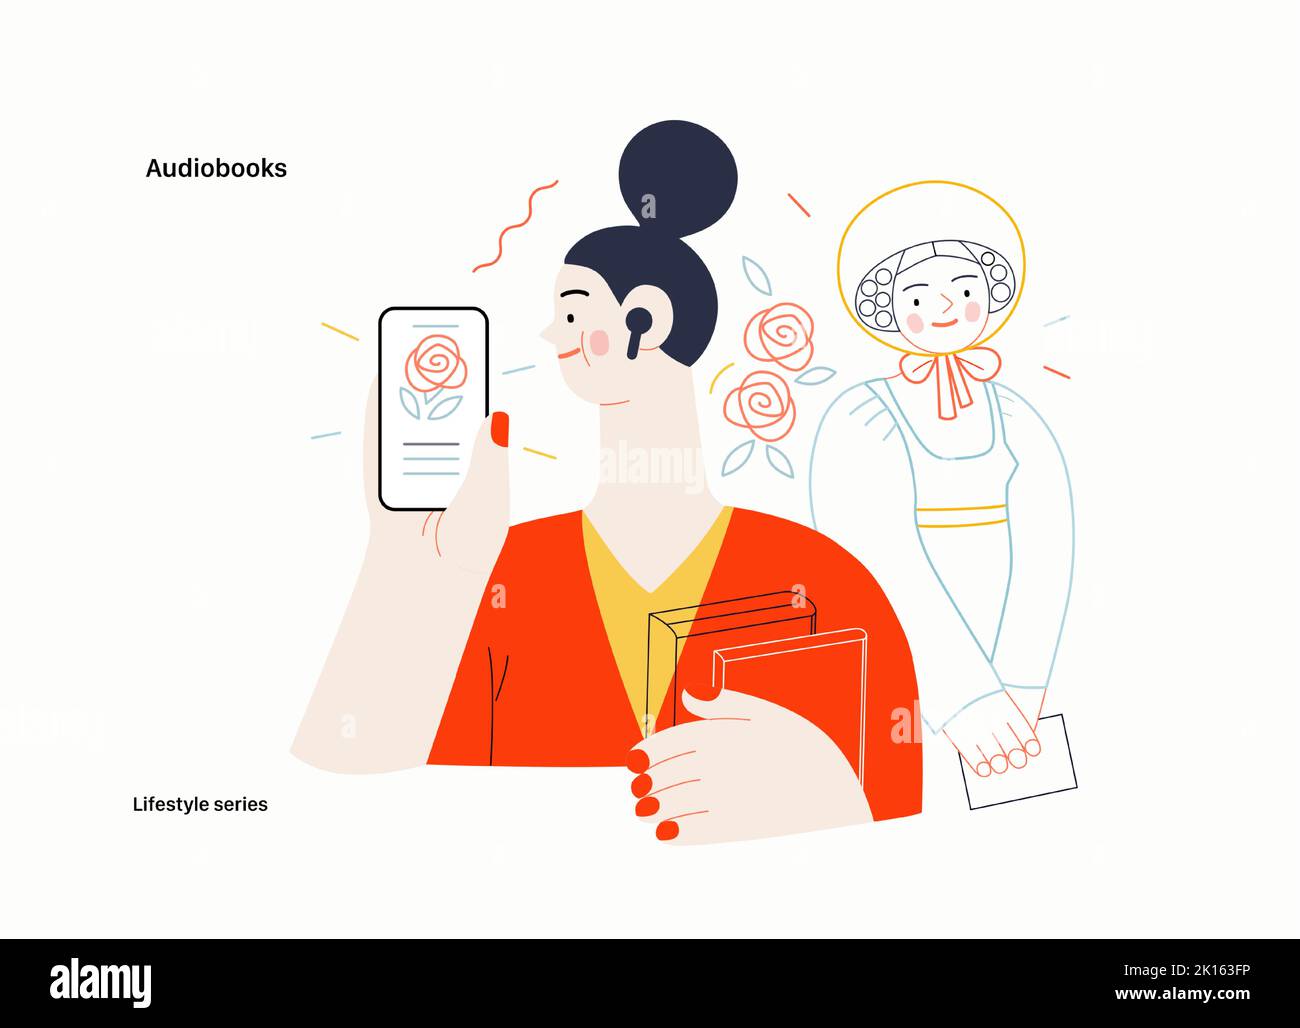 Lifestyle series - Audiolibros - Moderna ilustración de vector plano de una mujer escuchando un audiolibro con brotes en la aplicación de la tableta y una victoriana Ilustración del Vector